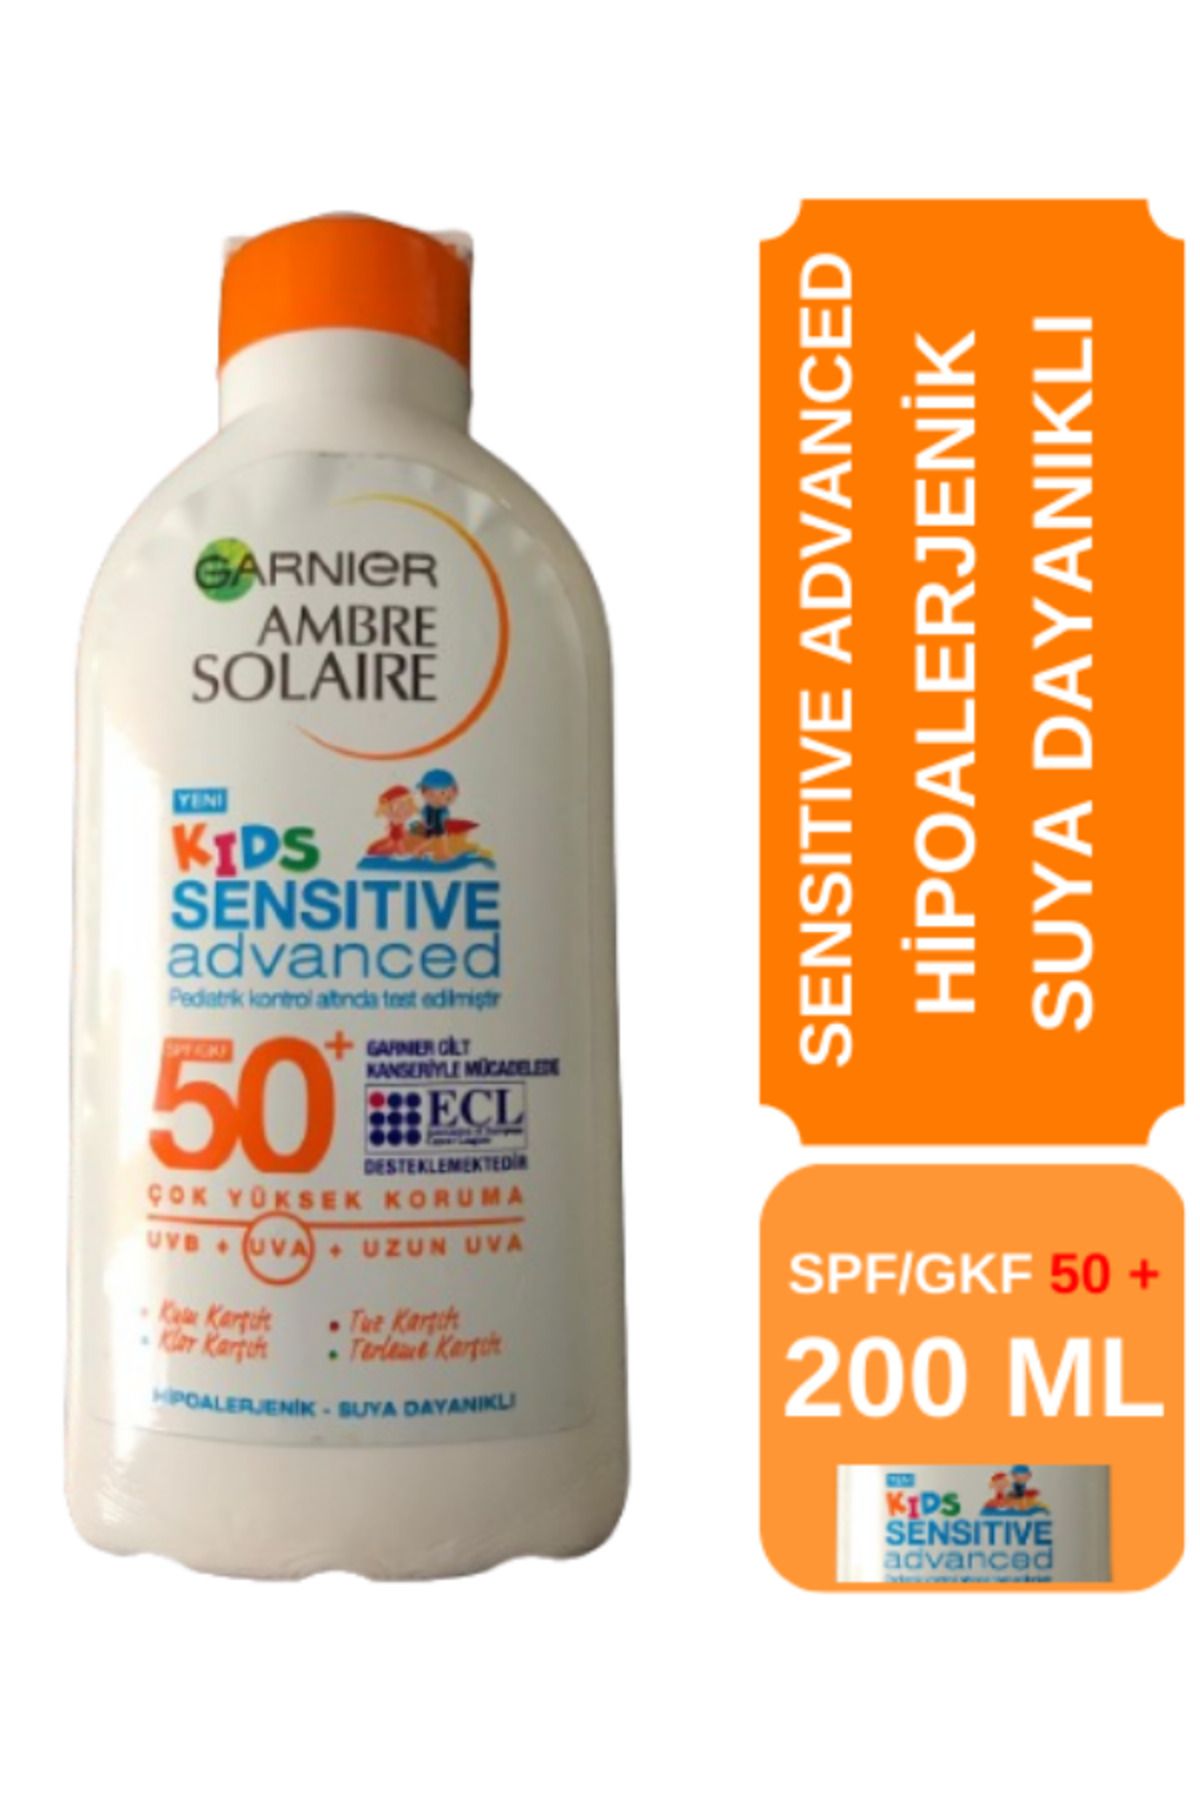 Garnier Ambre Solaire Sensitive Advanced Çocuk Hipoalerjenik Güneş Koruyucu spf/gkf 50+ 200 ML